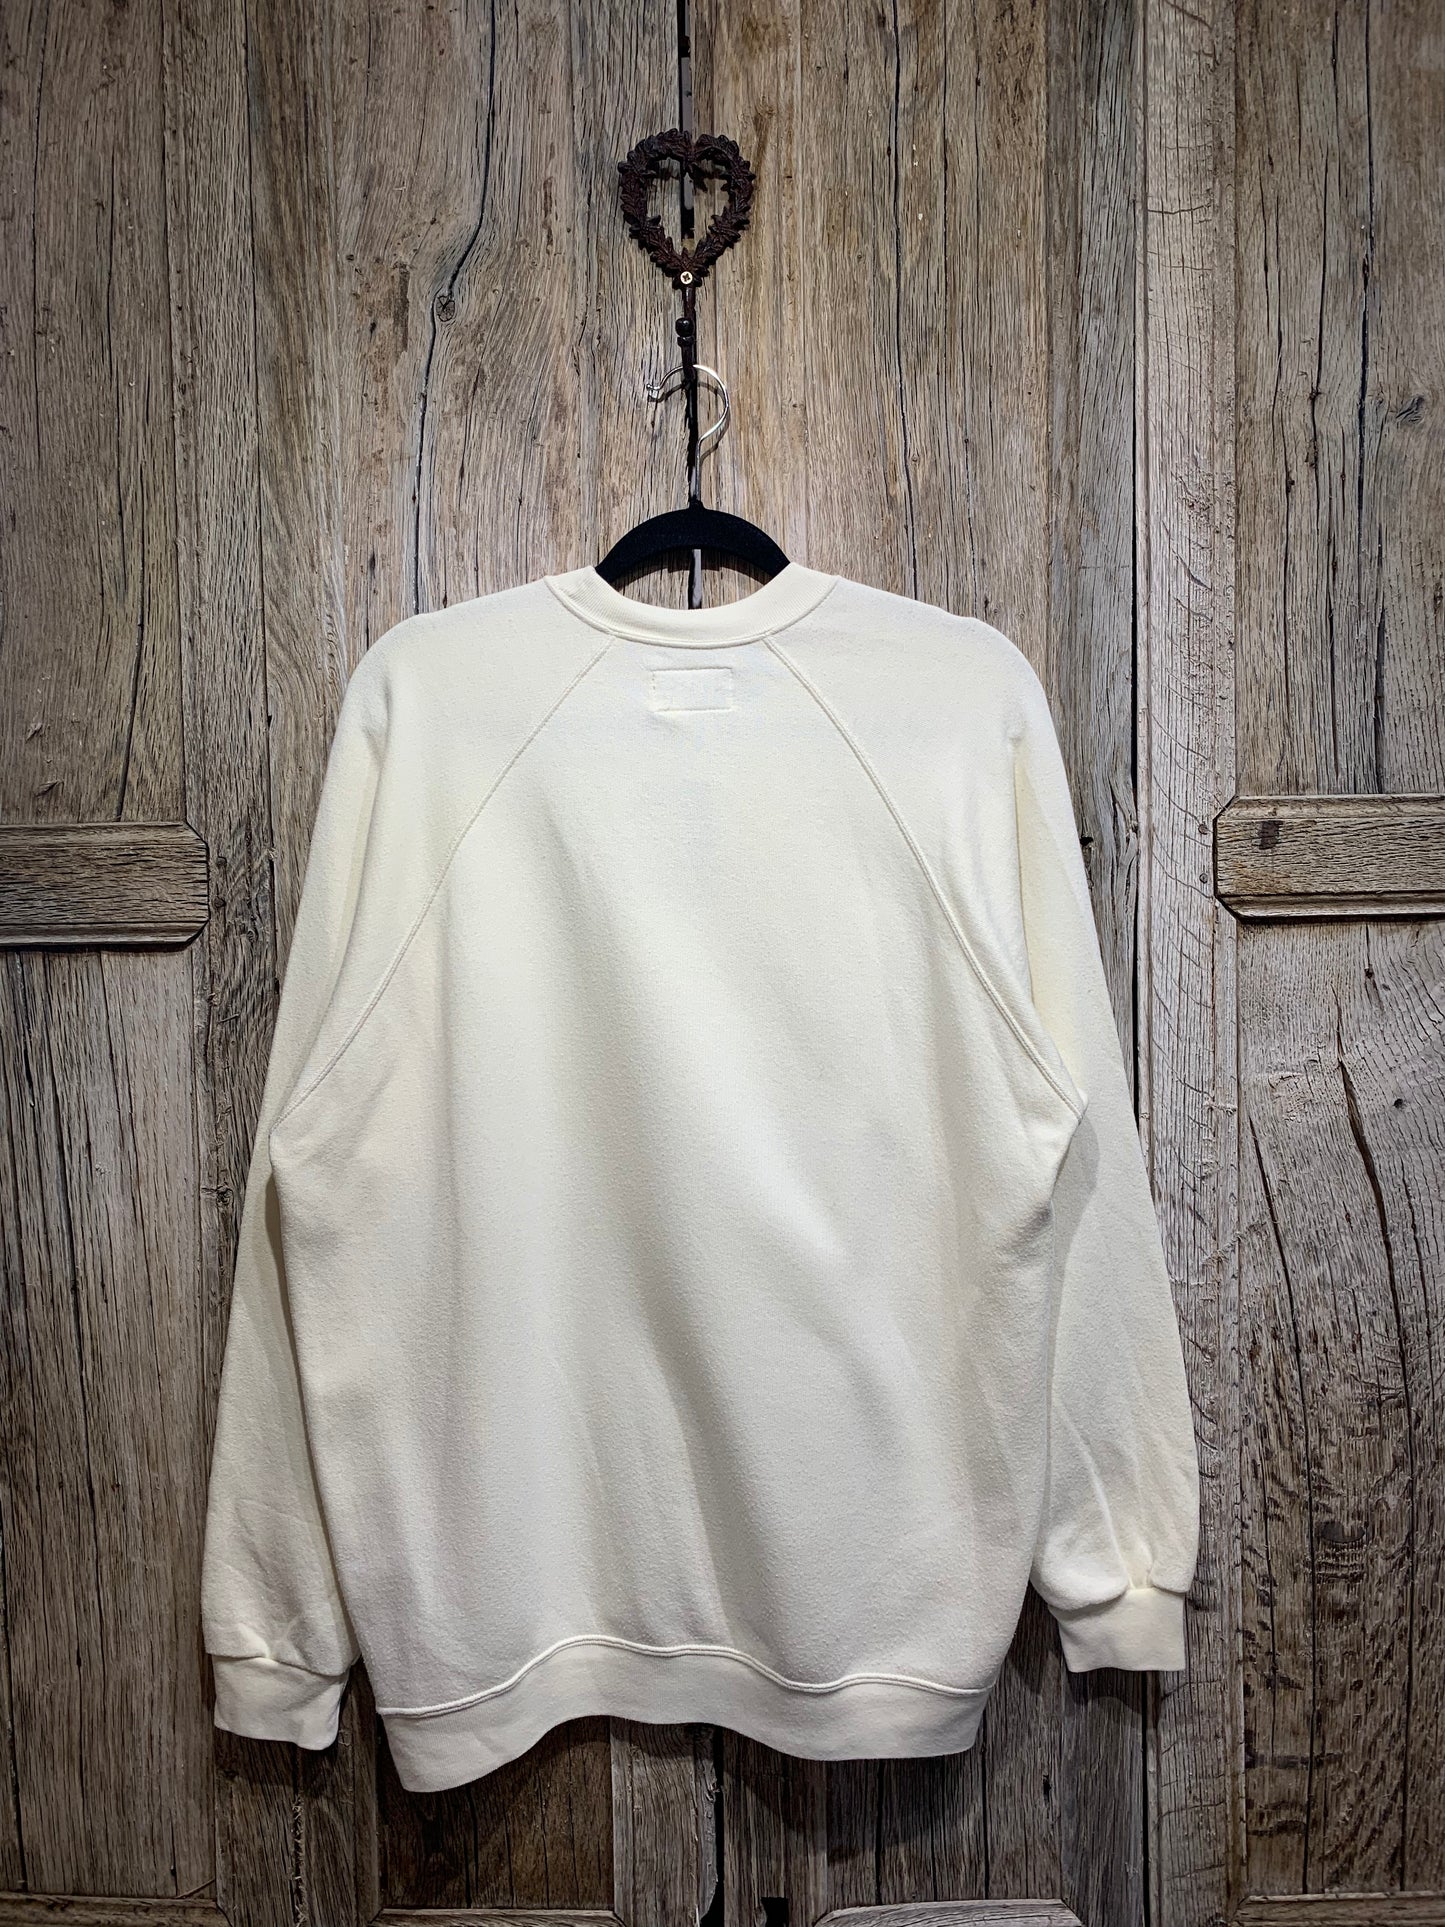 Vintage Levi’s 501 Embroidered Sweatshirt